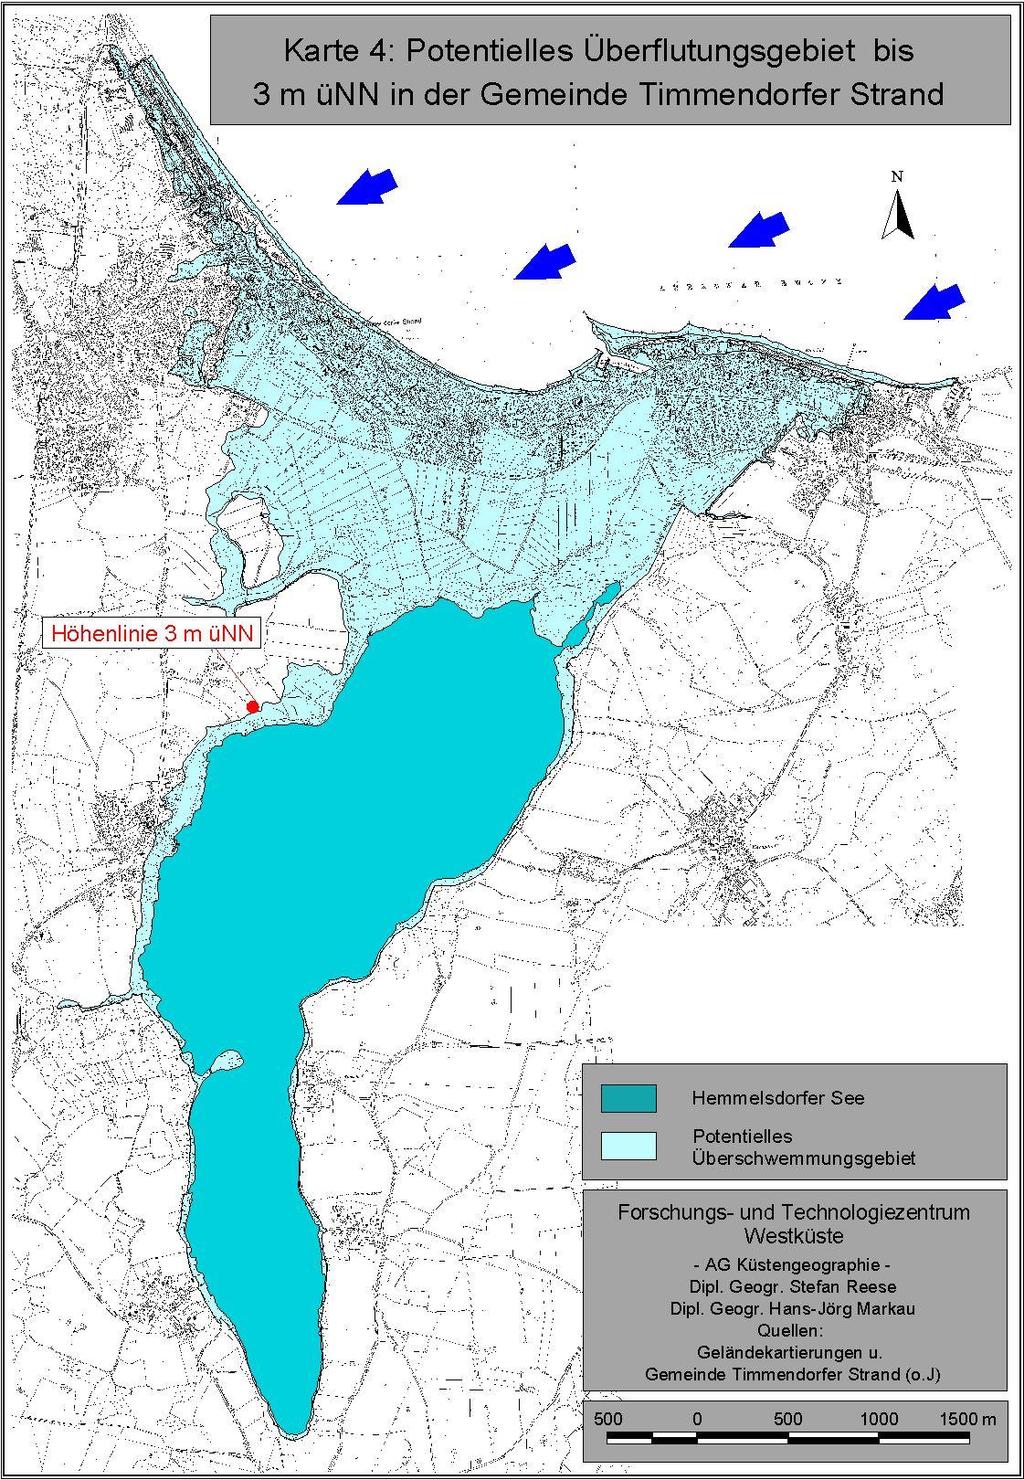 1. Motivation Die Wertermittlung des Forschung- und Technologiezentrum Westküste (1999-2000) umfasst die Analyse der - Überflutungsflächen, - investierten Werte, - Flächennutzungen sowie - Besiedlung